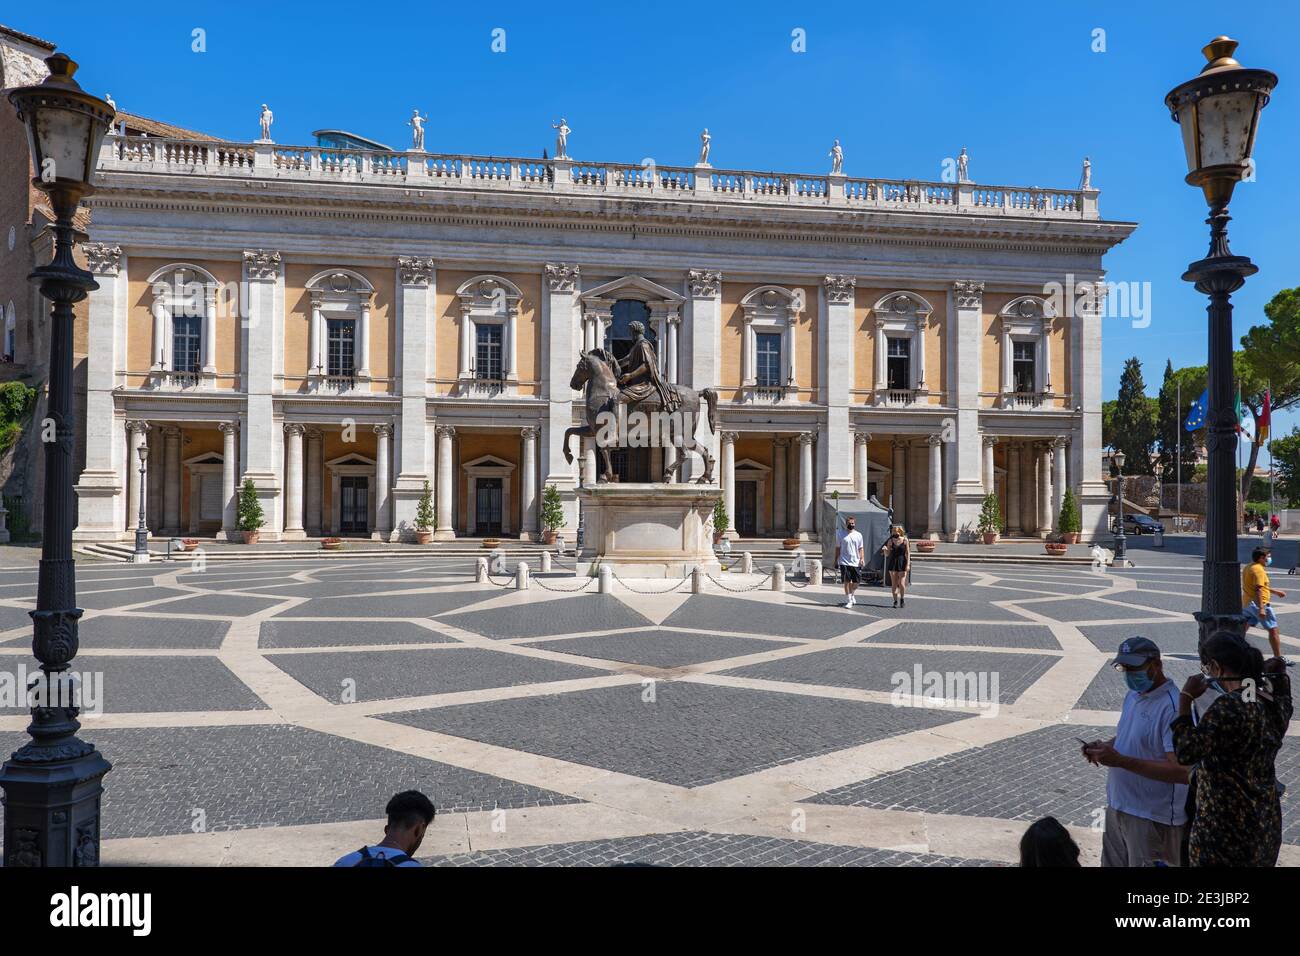 Capitoline Hill in Rome, Italy, Piazza del Campidoglio city square with Palazzo dei Conservatori and Statue of Marcus Aurelius Stock Photo